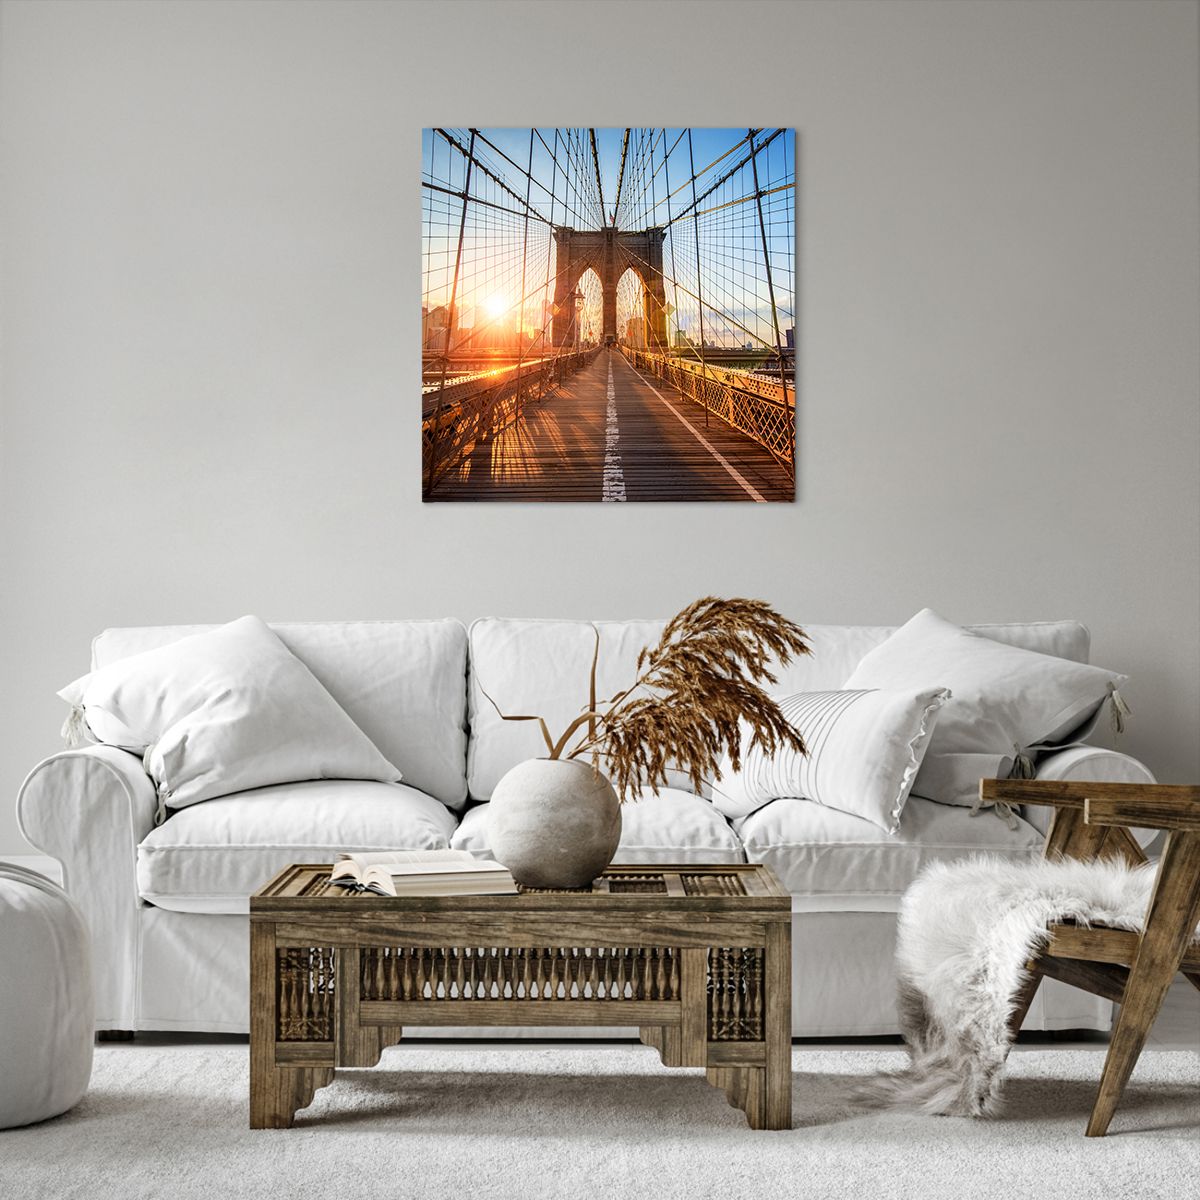 Obrazy na płótnie Nowy Jork, Obrazy na płótnie Most Brookliński, Obrazy na płótnie Architektura, Obrazy na płótnie Manhattan, Obrazy na płótnie Słońce